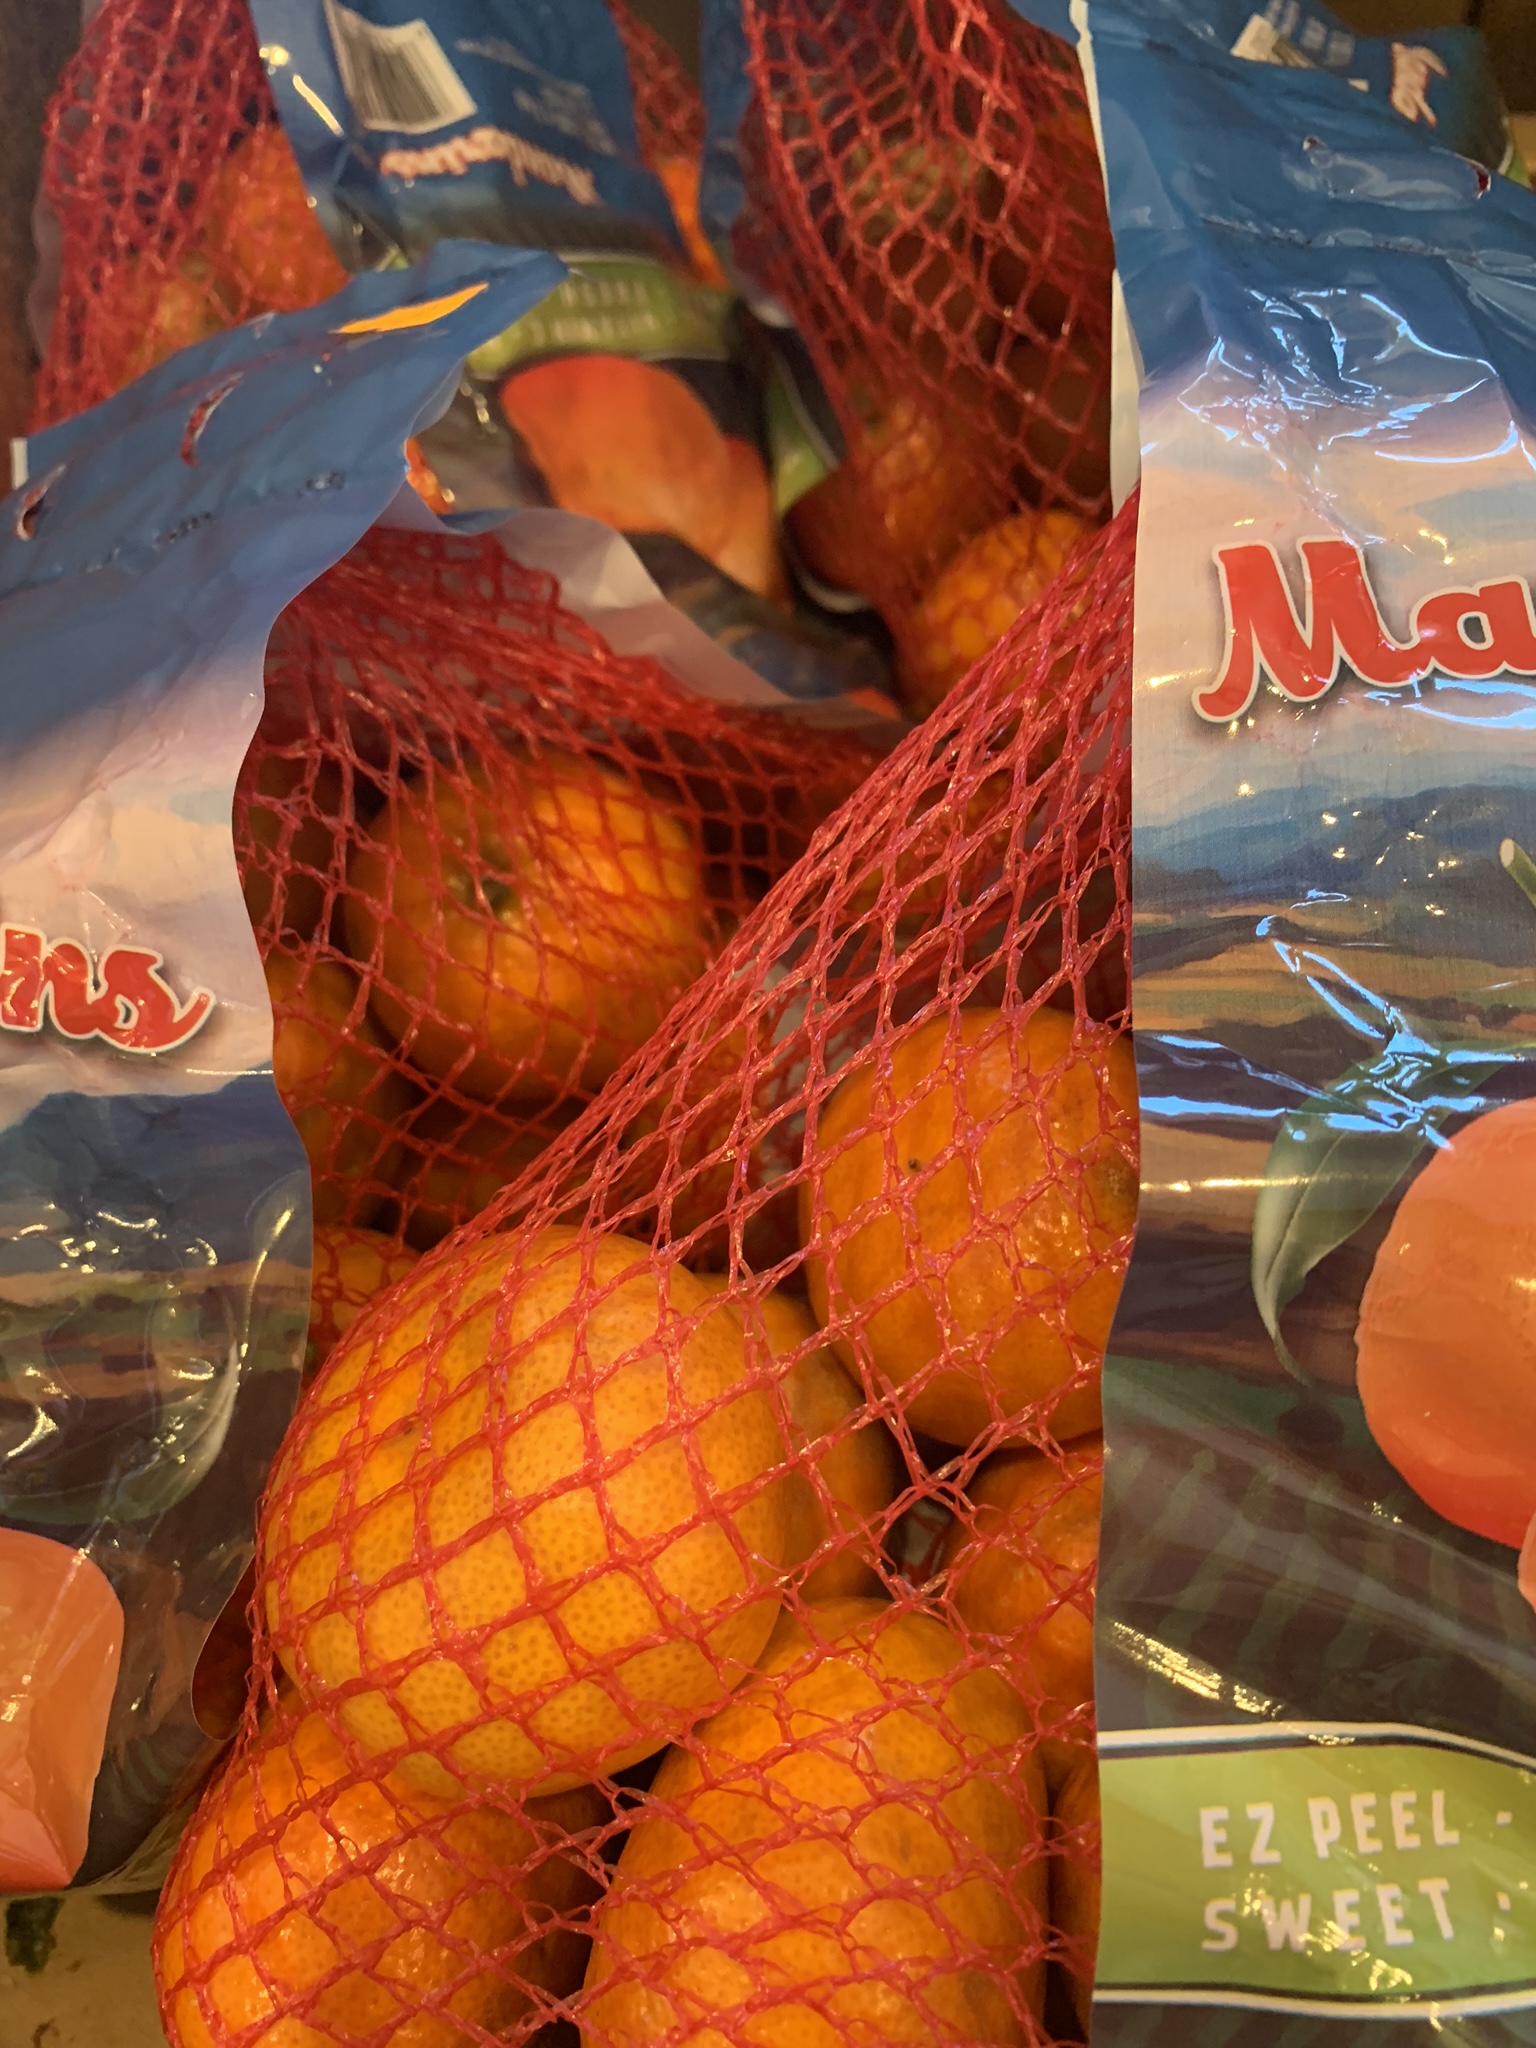 Tangerines Fresh Produce Fruit Vegetables 3 lb Bag